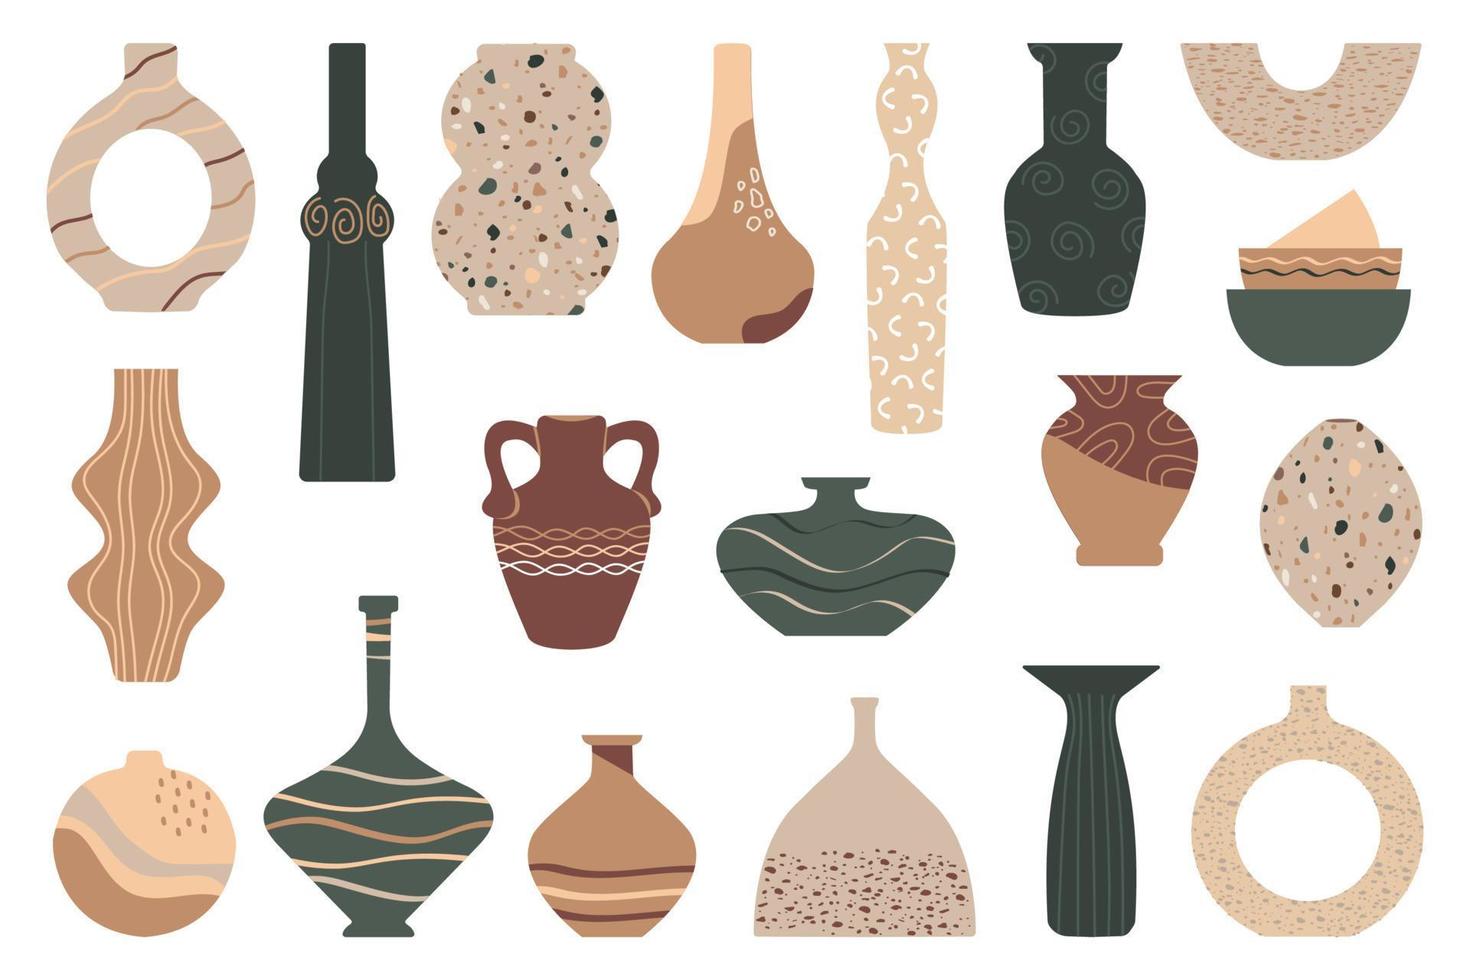 cerâmica, vasos, tigelas de barro. um conjunto de jarras e vasos de cerâmica. coleção de elementos decorativos de vasos para interior. vetor